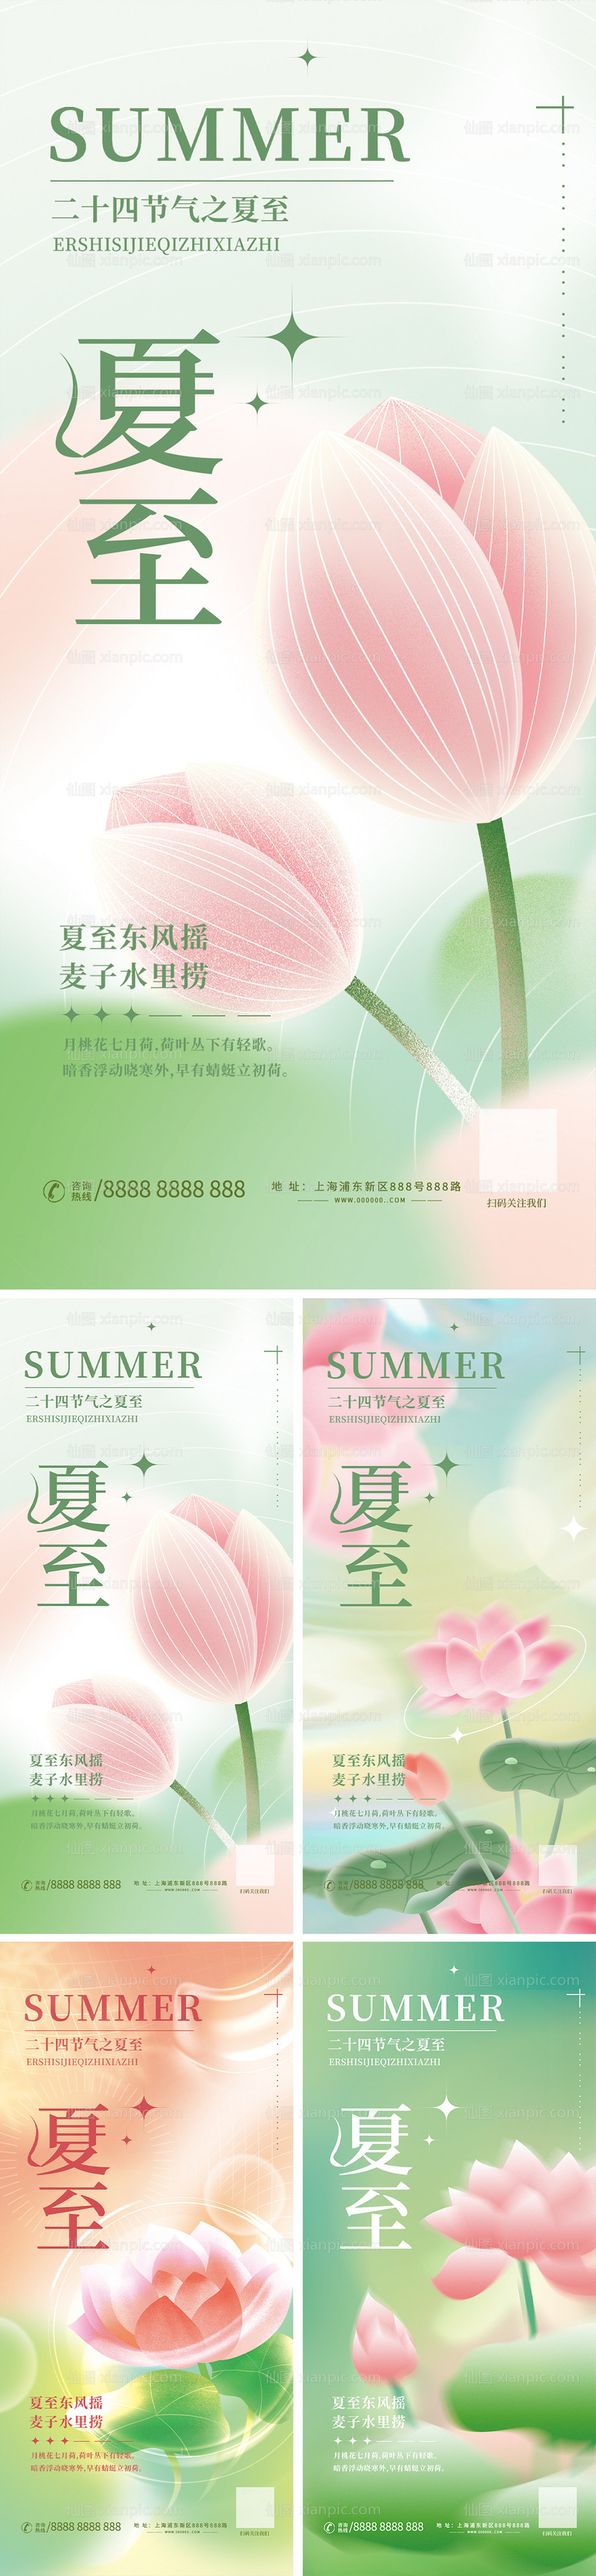 素材乐-夏至节气系列海报